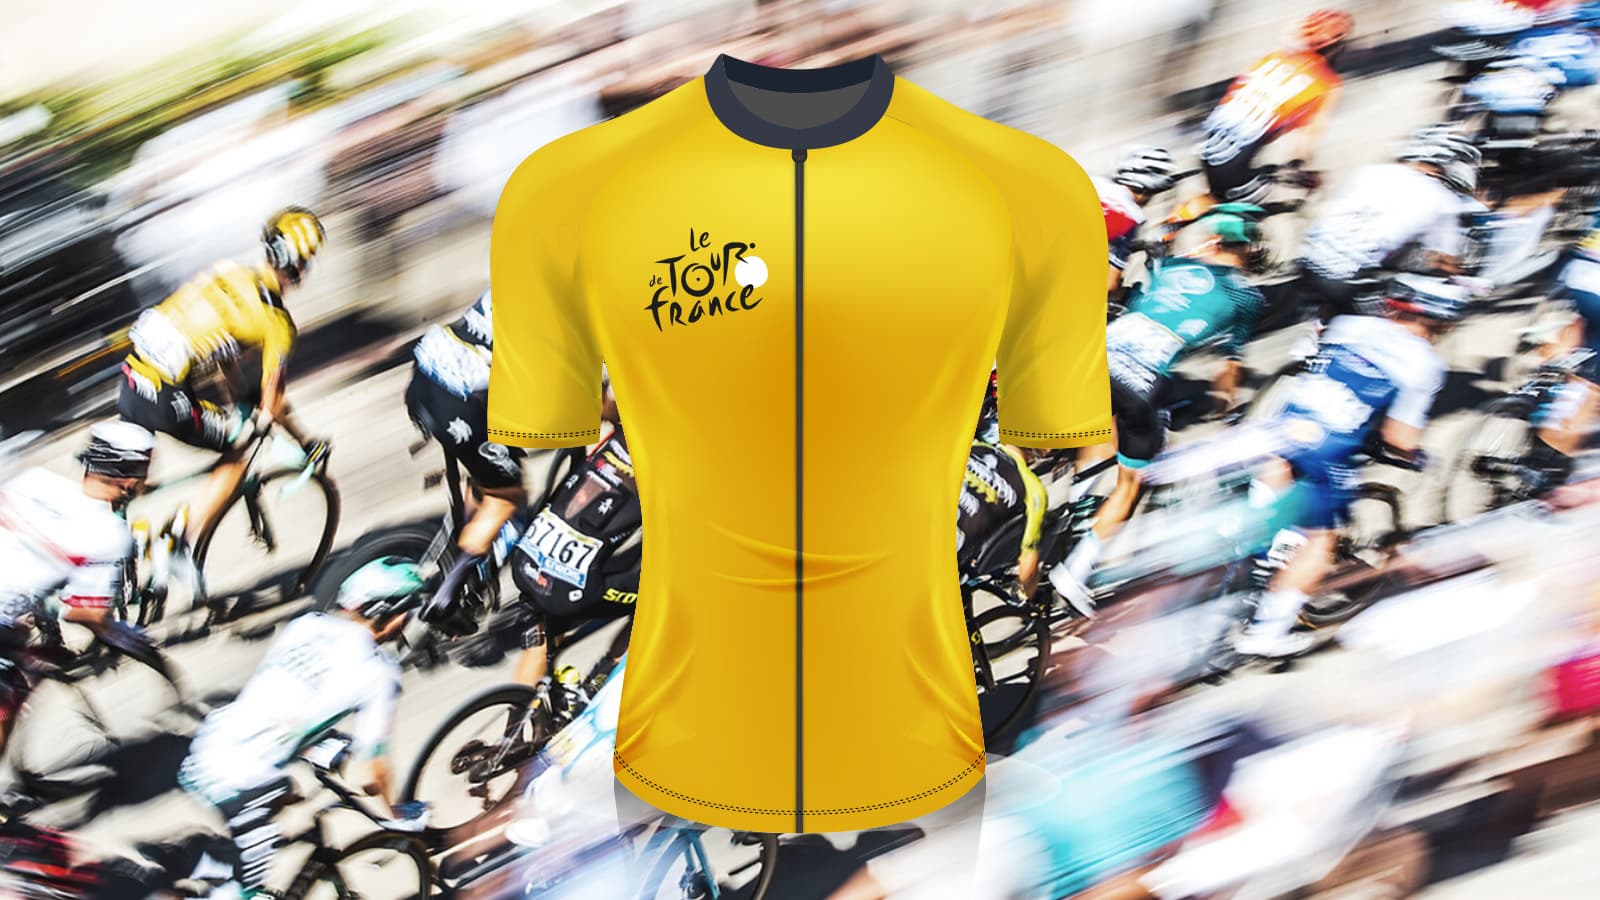 Polak w koszulce lidera podczas Tour de France. To nie sen, to jawa – historia Lecha Piaseckiego